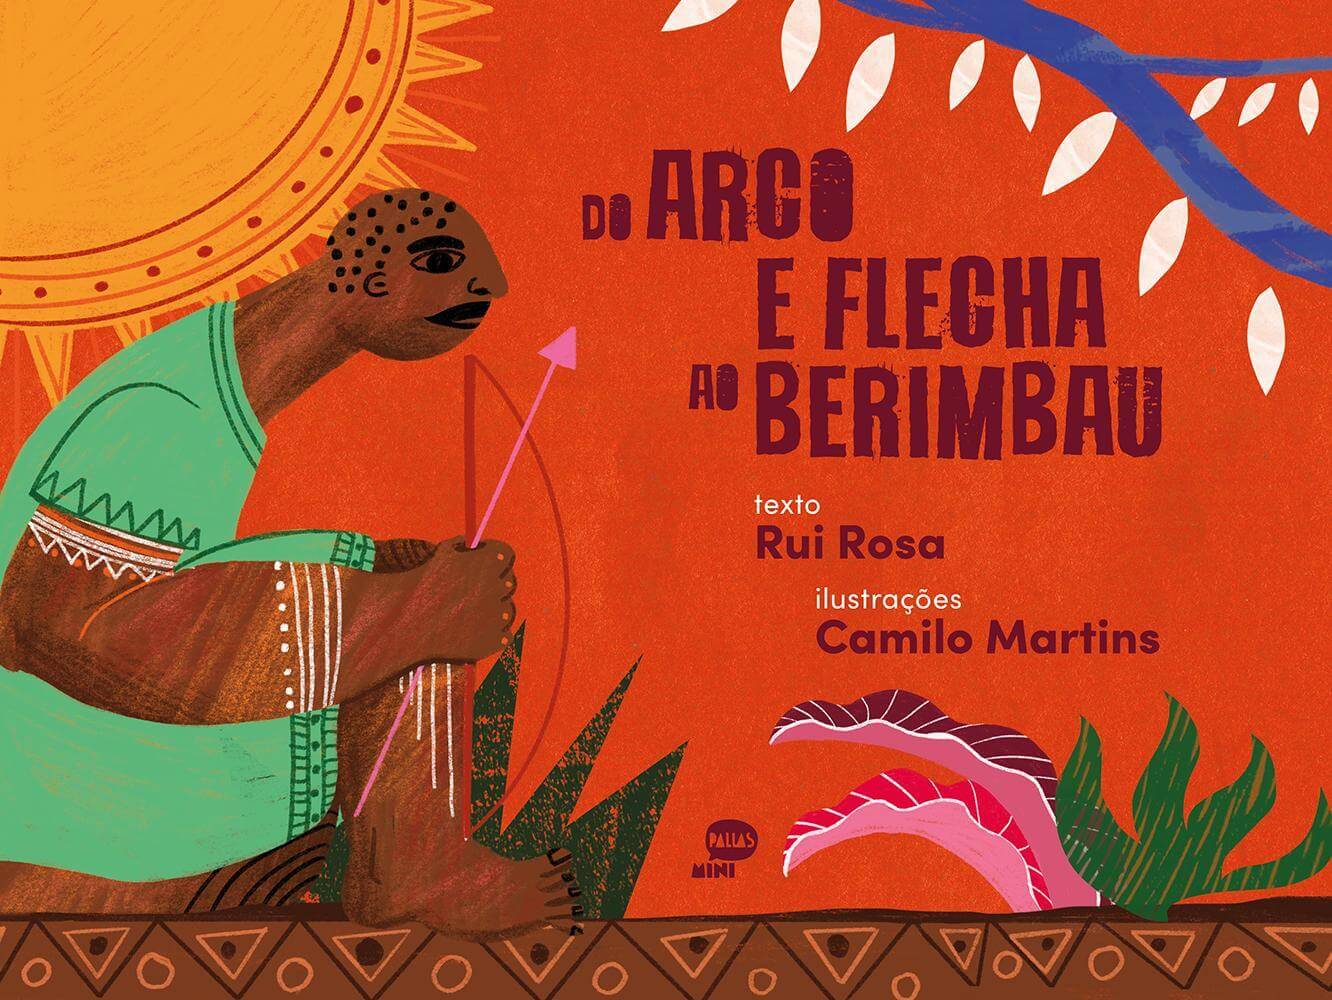 Pallas Míni lança “Do Arco e Flecha ao Berimbau”, de Rui Rosa e Camilo Martins